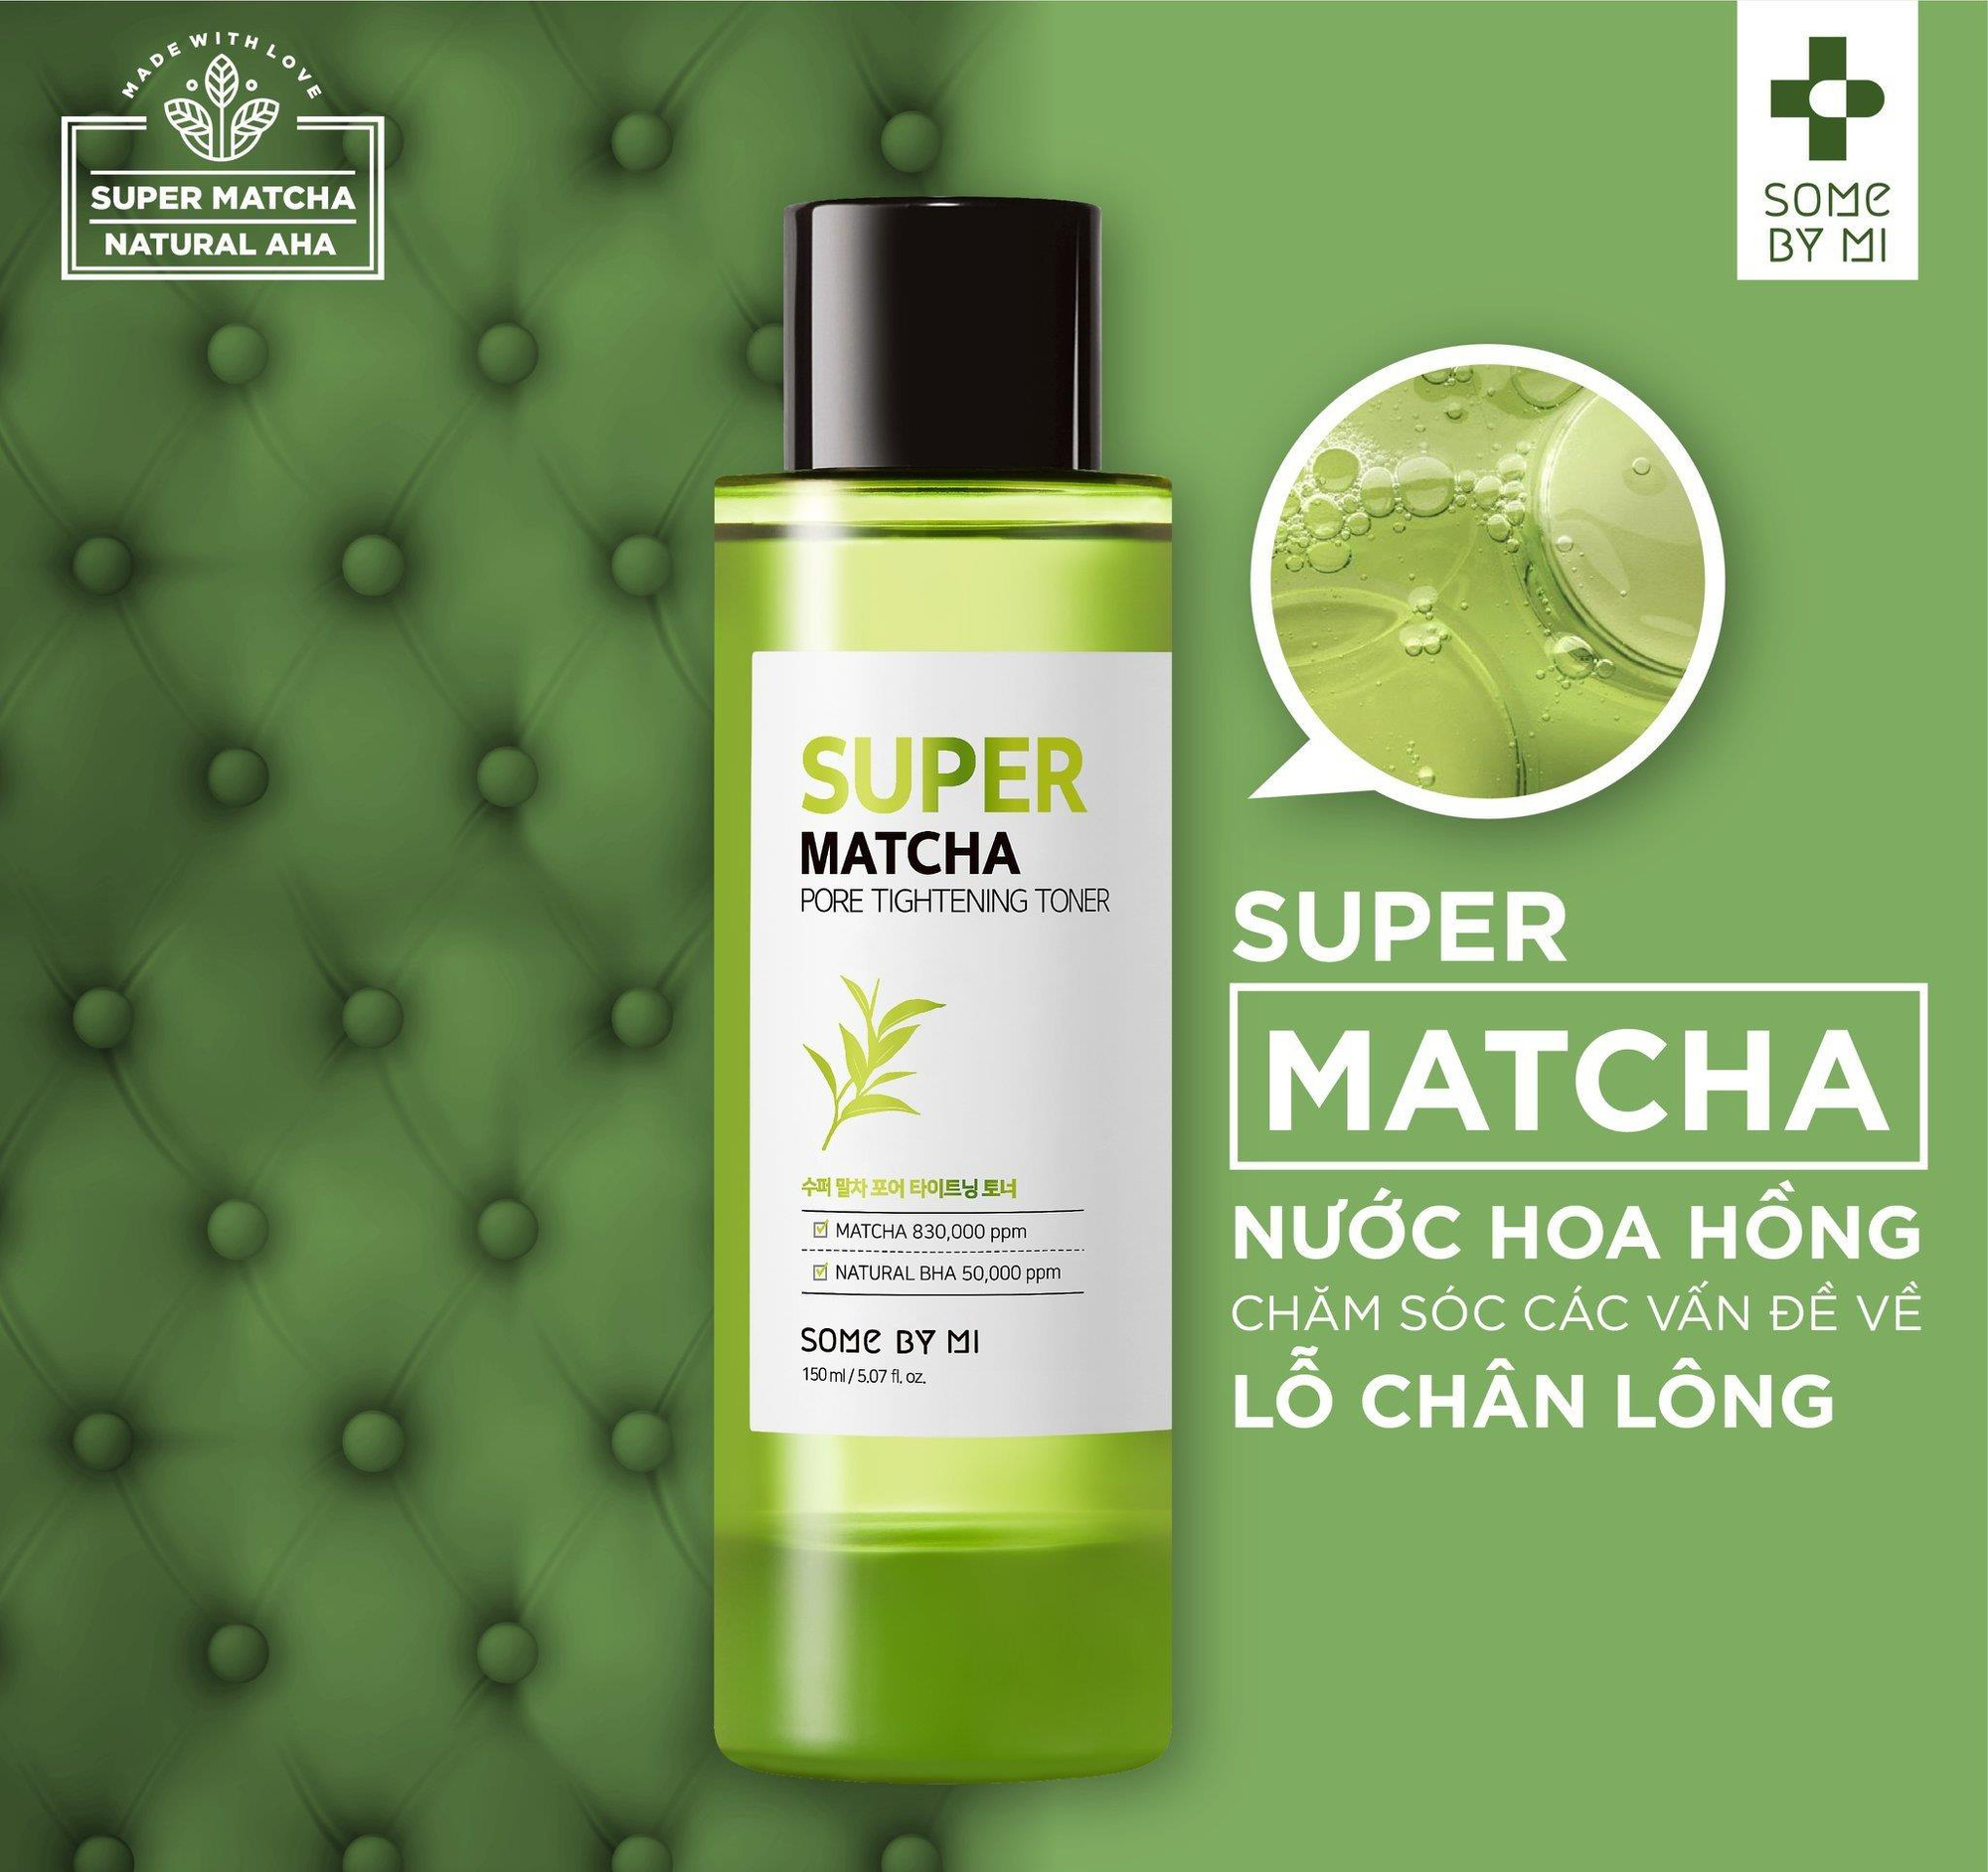 Dòng sản phẩm mới “khuấy đảo thị trường” Super Matcha của Some By Mi đã có mặt tại Việt Nam với quà cực hấp dẫn - Ảnh 4.